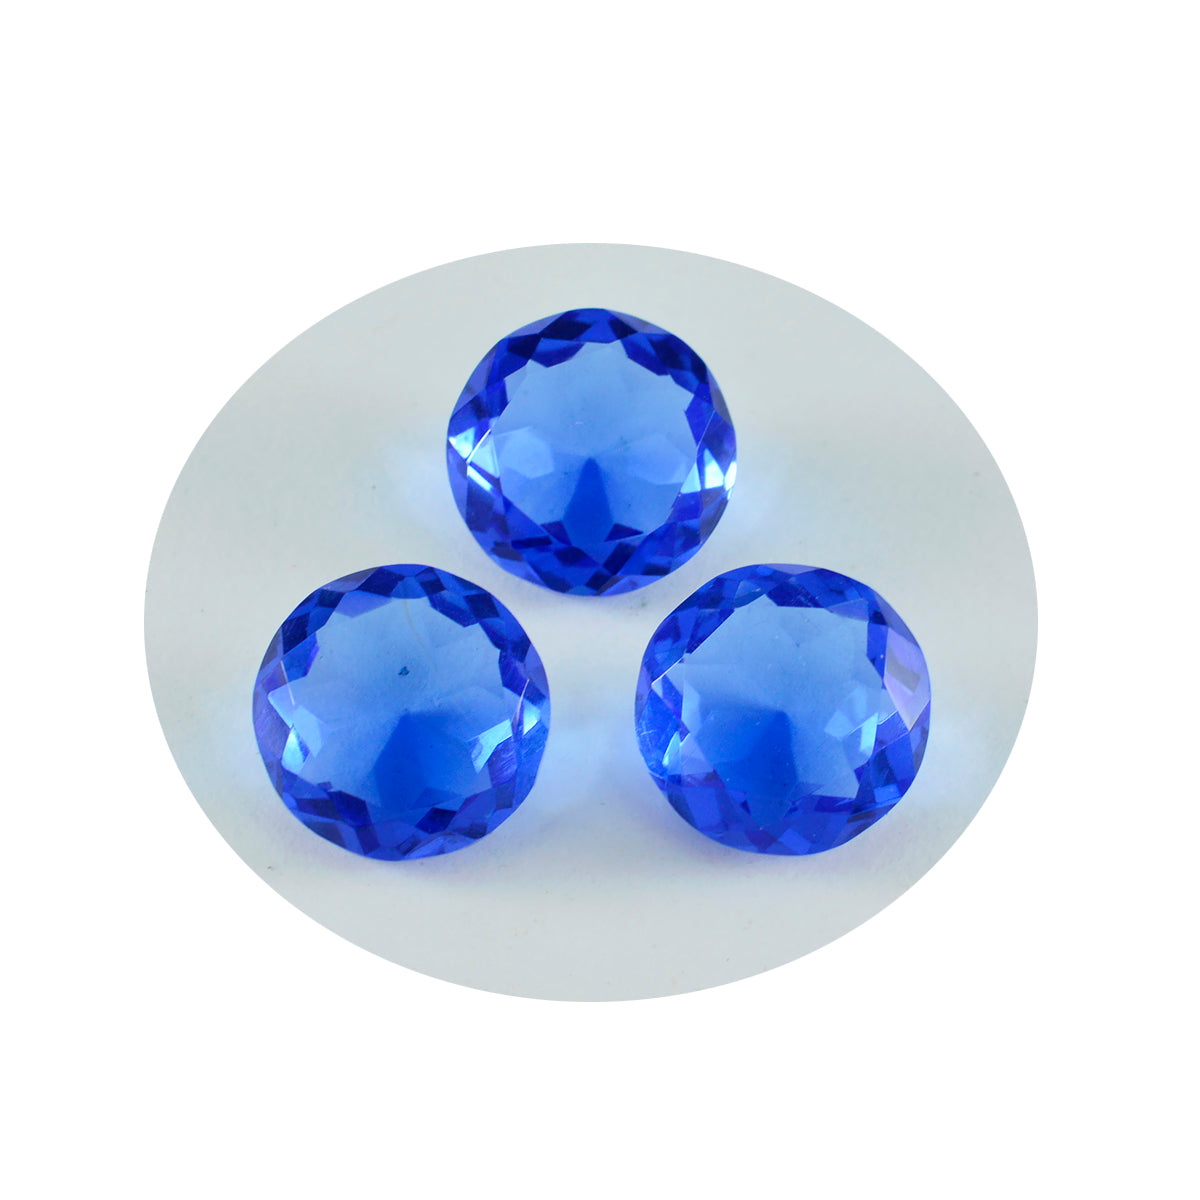 riyogems 1 шт. синий сапфир cz ограненный 14x14 мм круглый драгоценный камень качества ААА